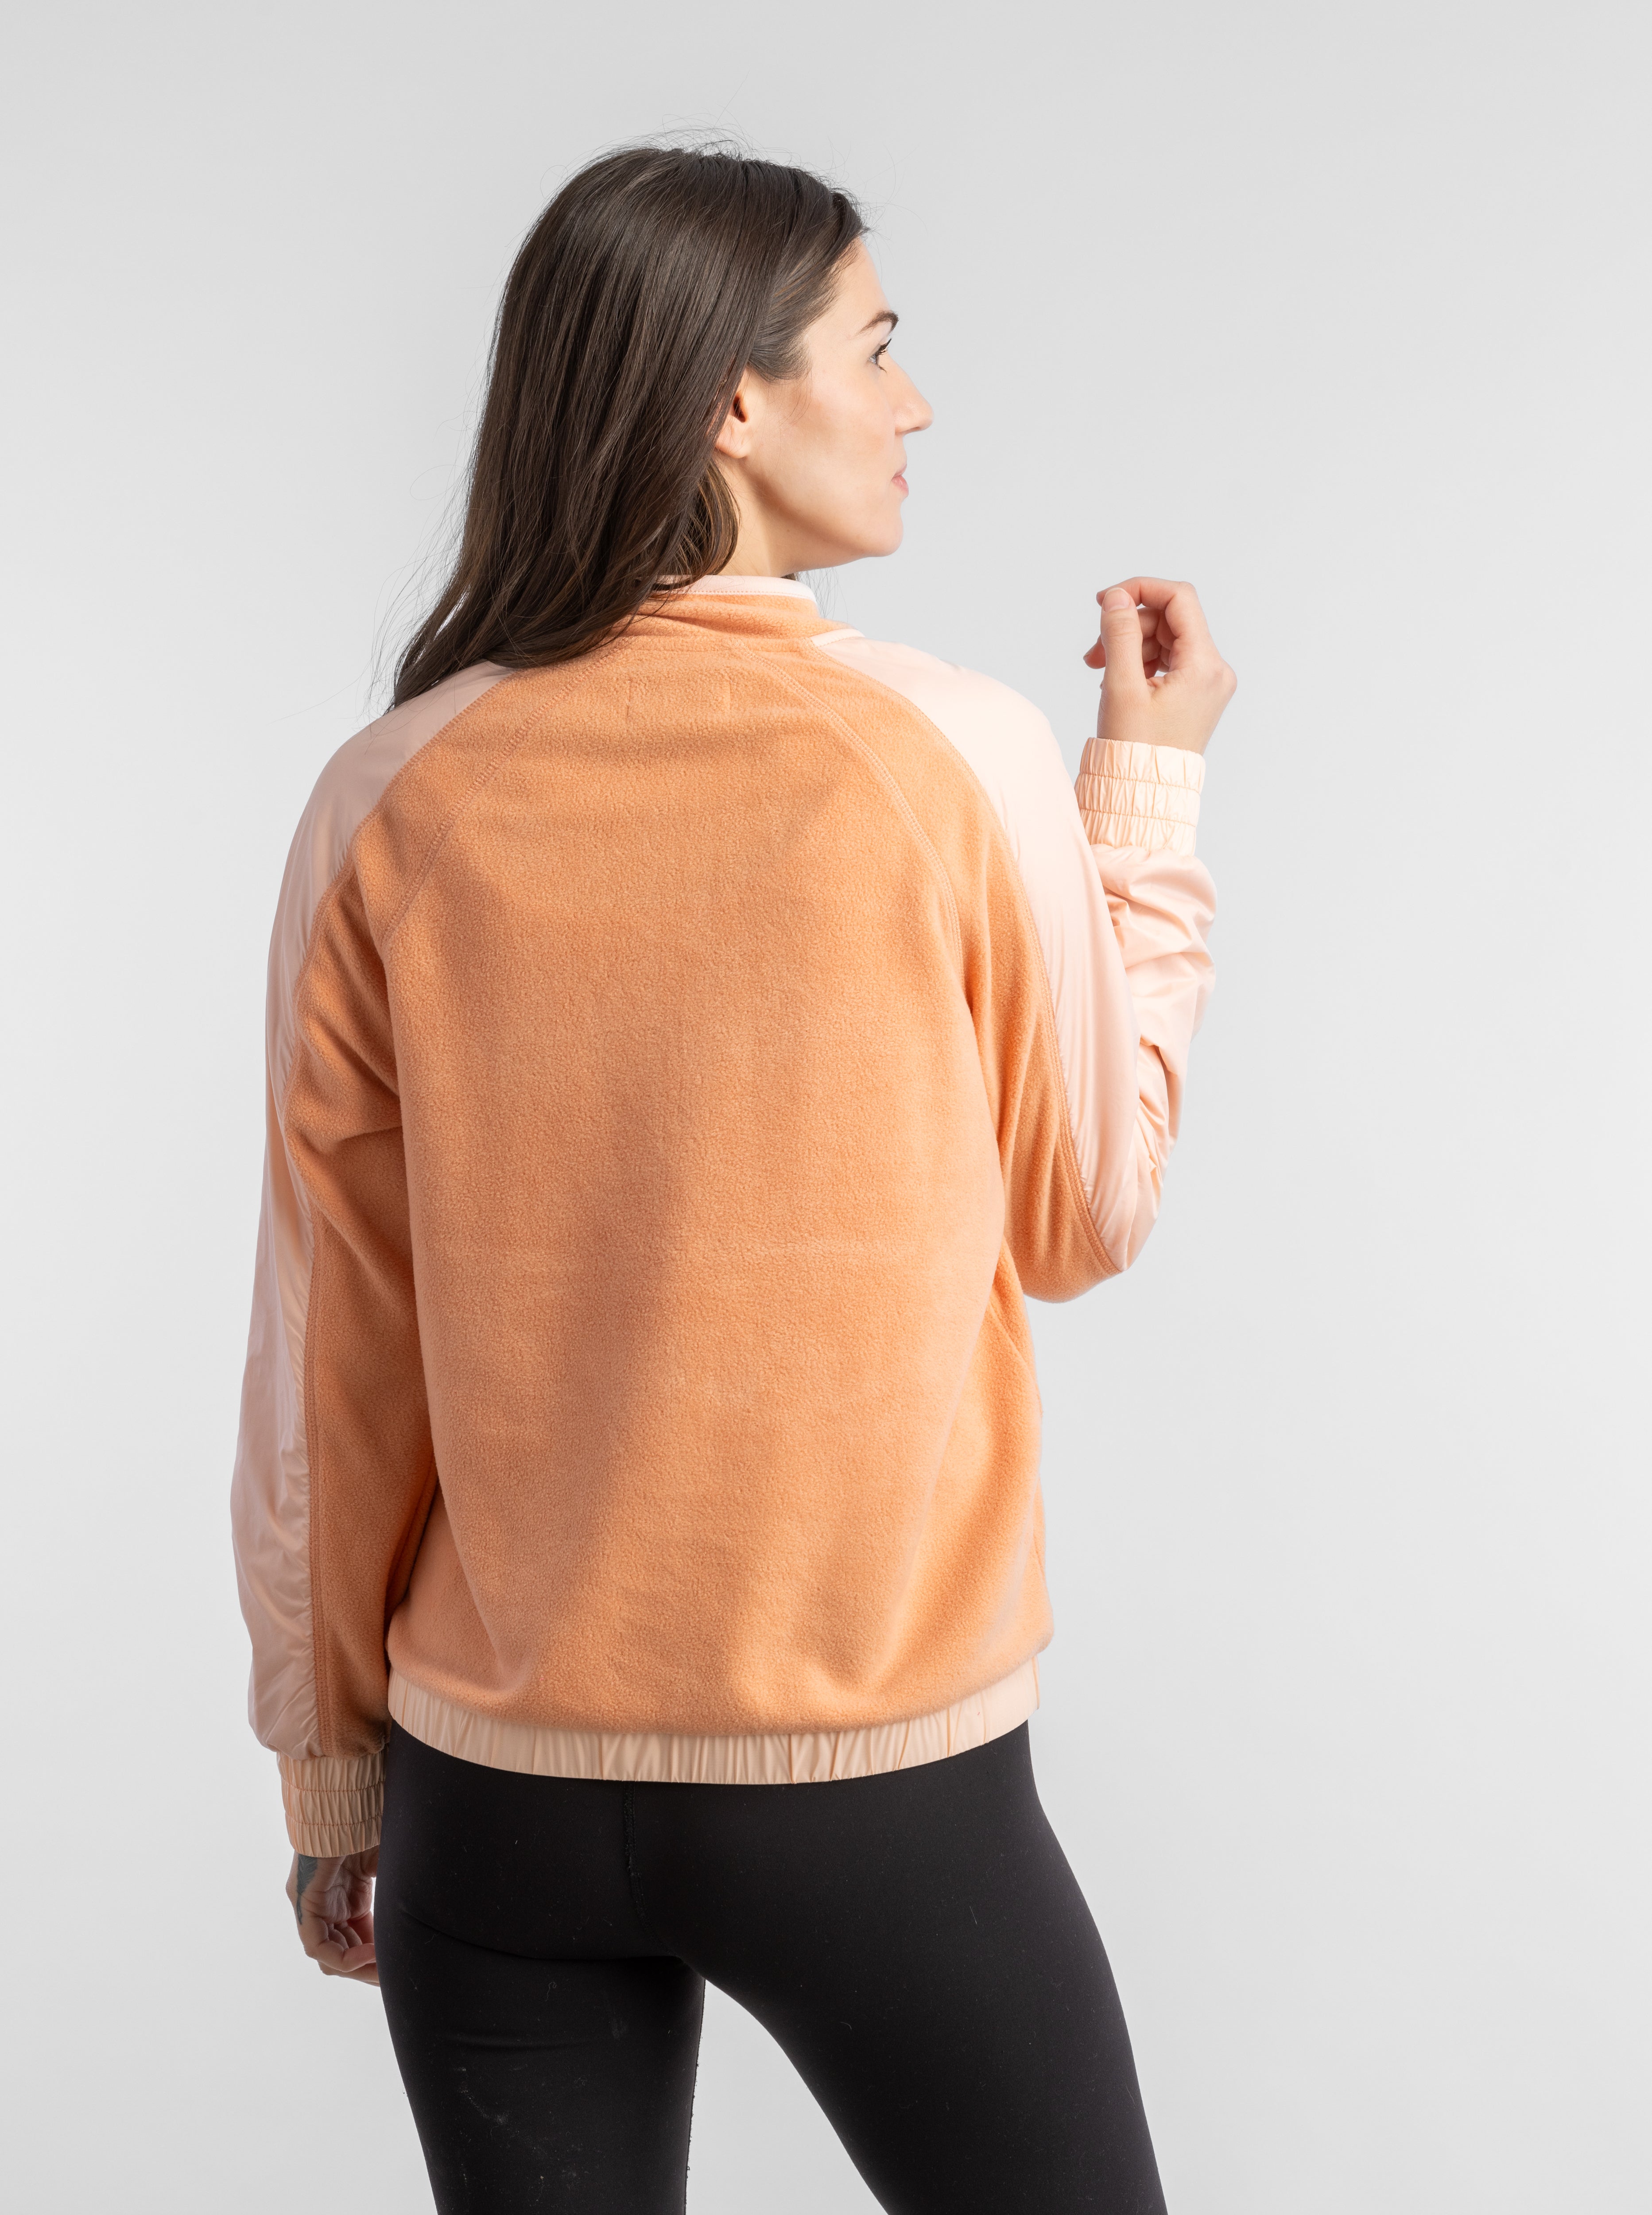 Women's Nila Microfleece Hybrid Pullover - LIV Outdoor